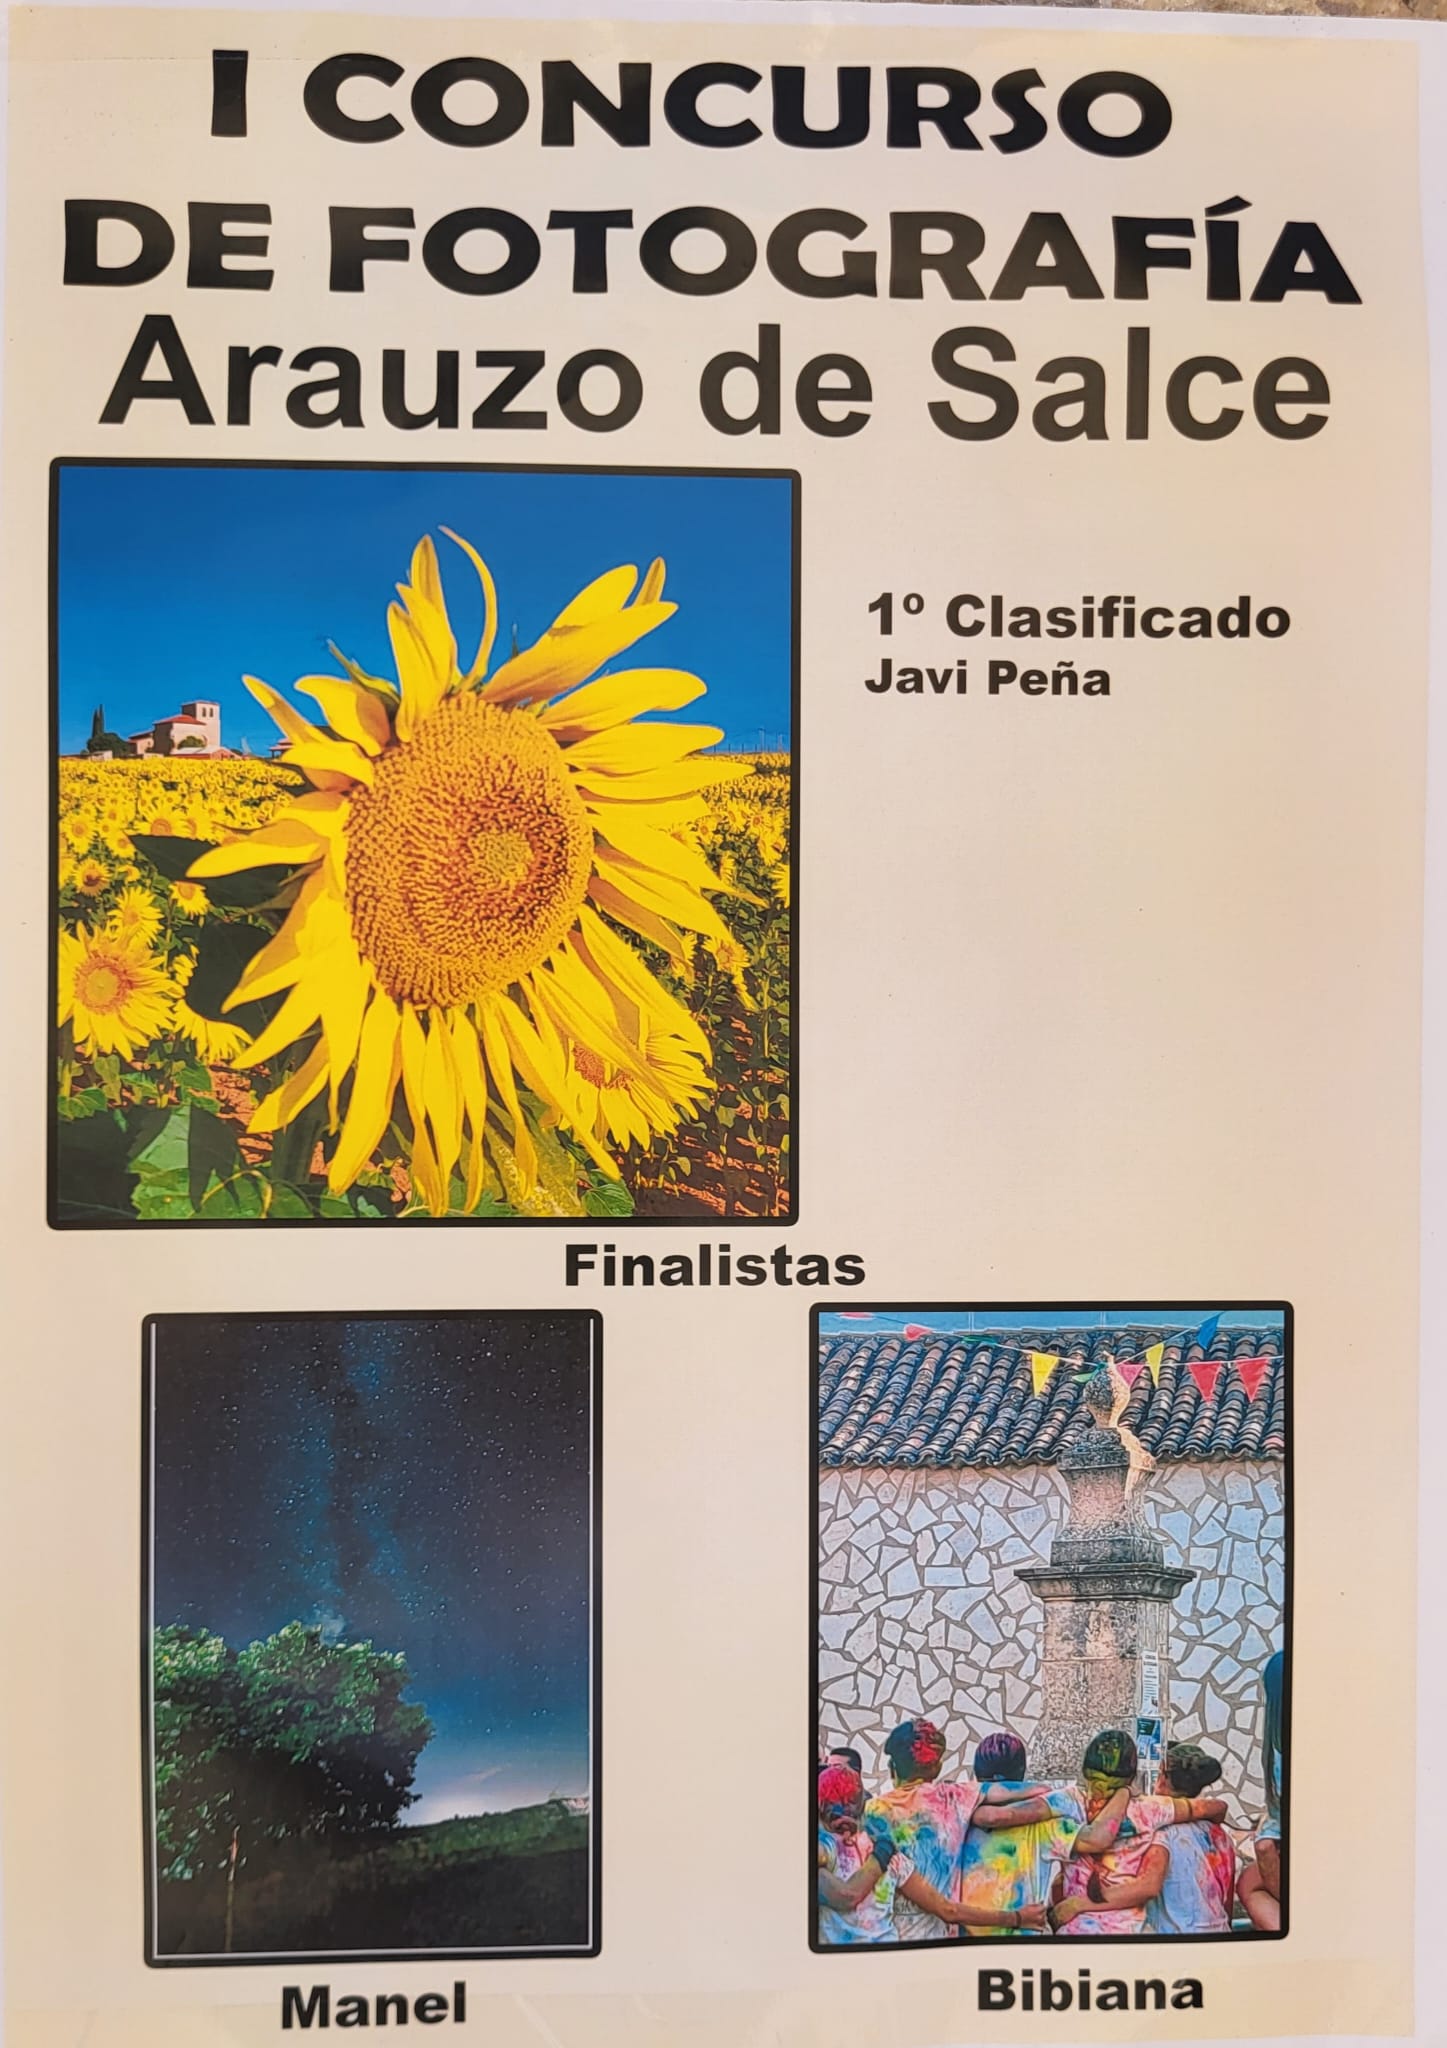 I Concurso de Fotografia de Arauzo de Salce